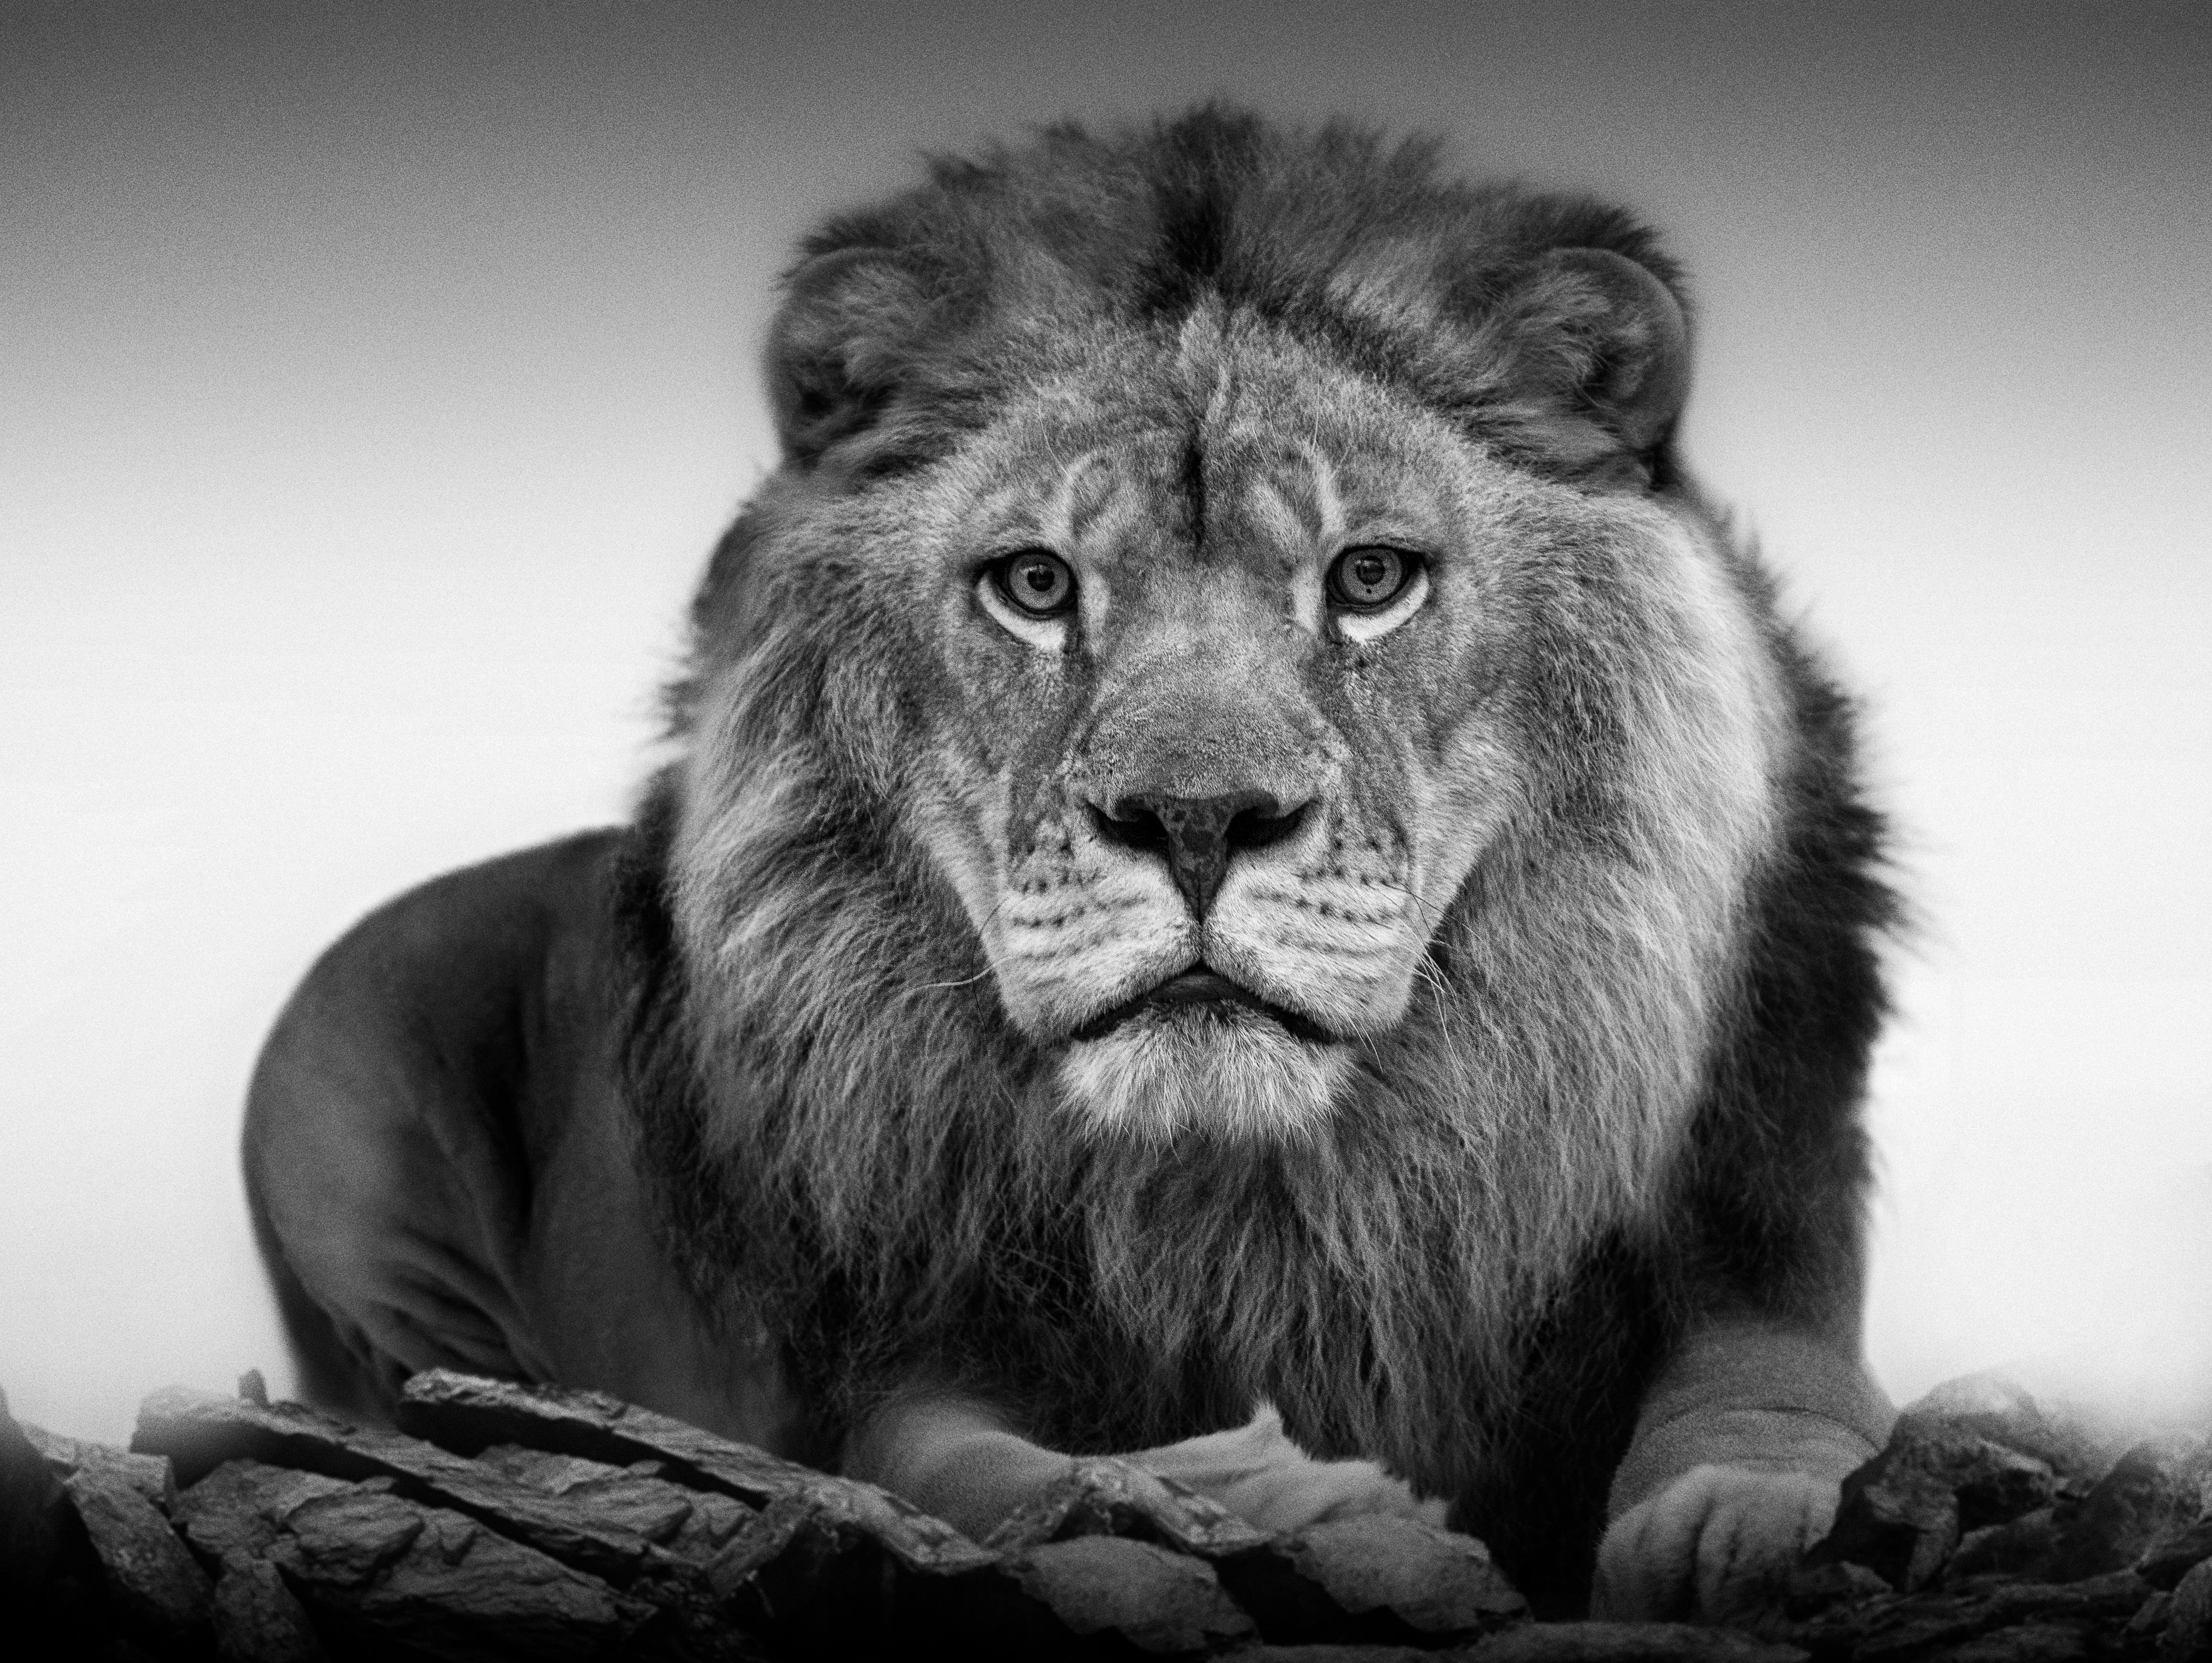  Lion Portrait - 36x48 Black & White Photography, Photograph Fine Art Africa 